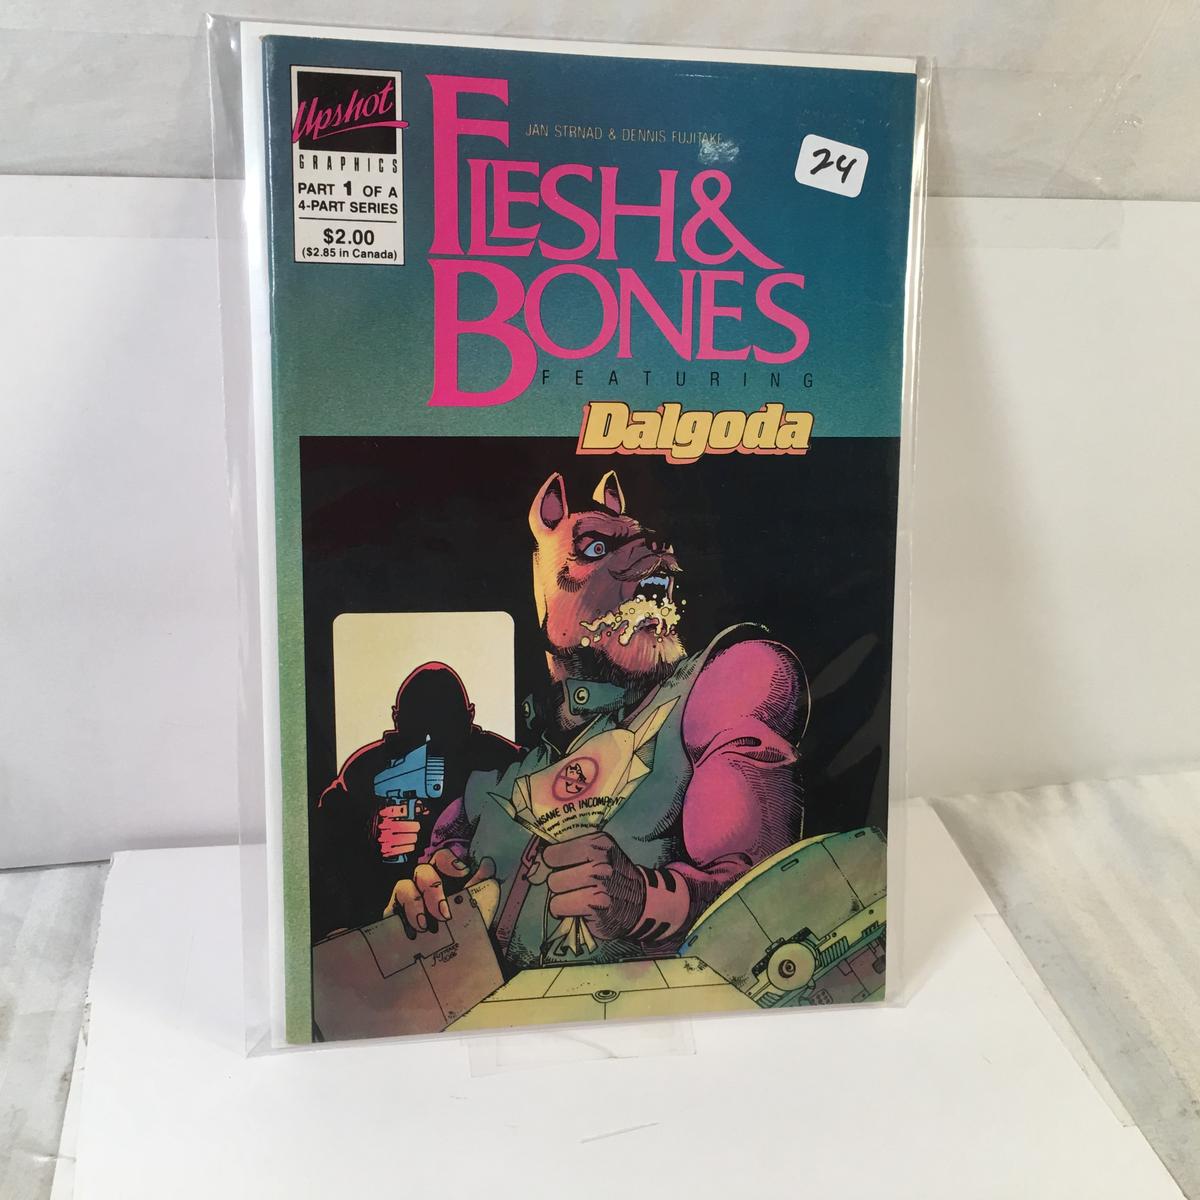 Collector Modern Comics Upshot Graphics F:esh & Bones Featuring Dalgoda Comic Book #1